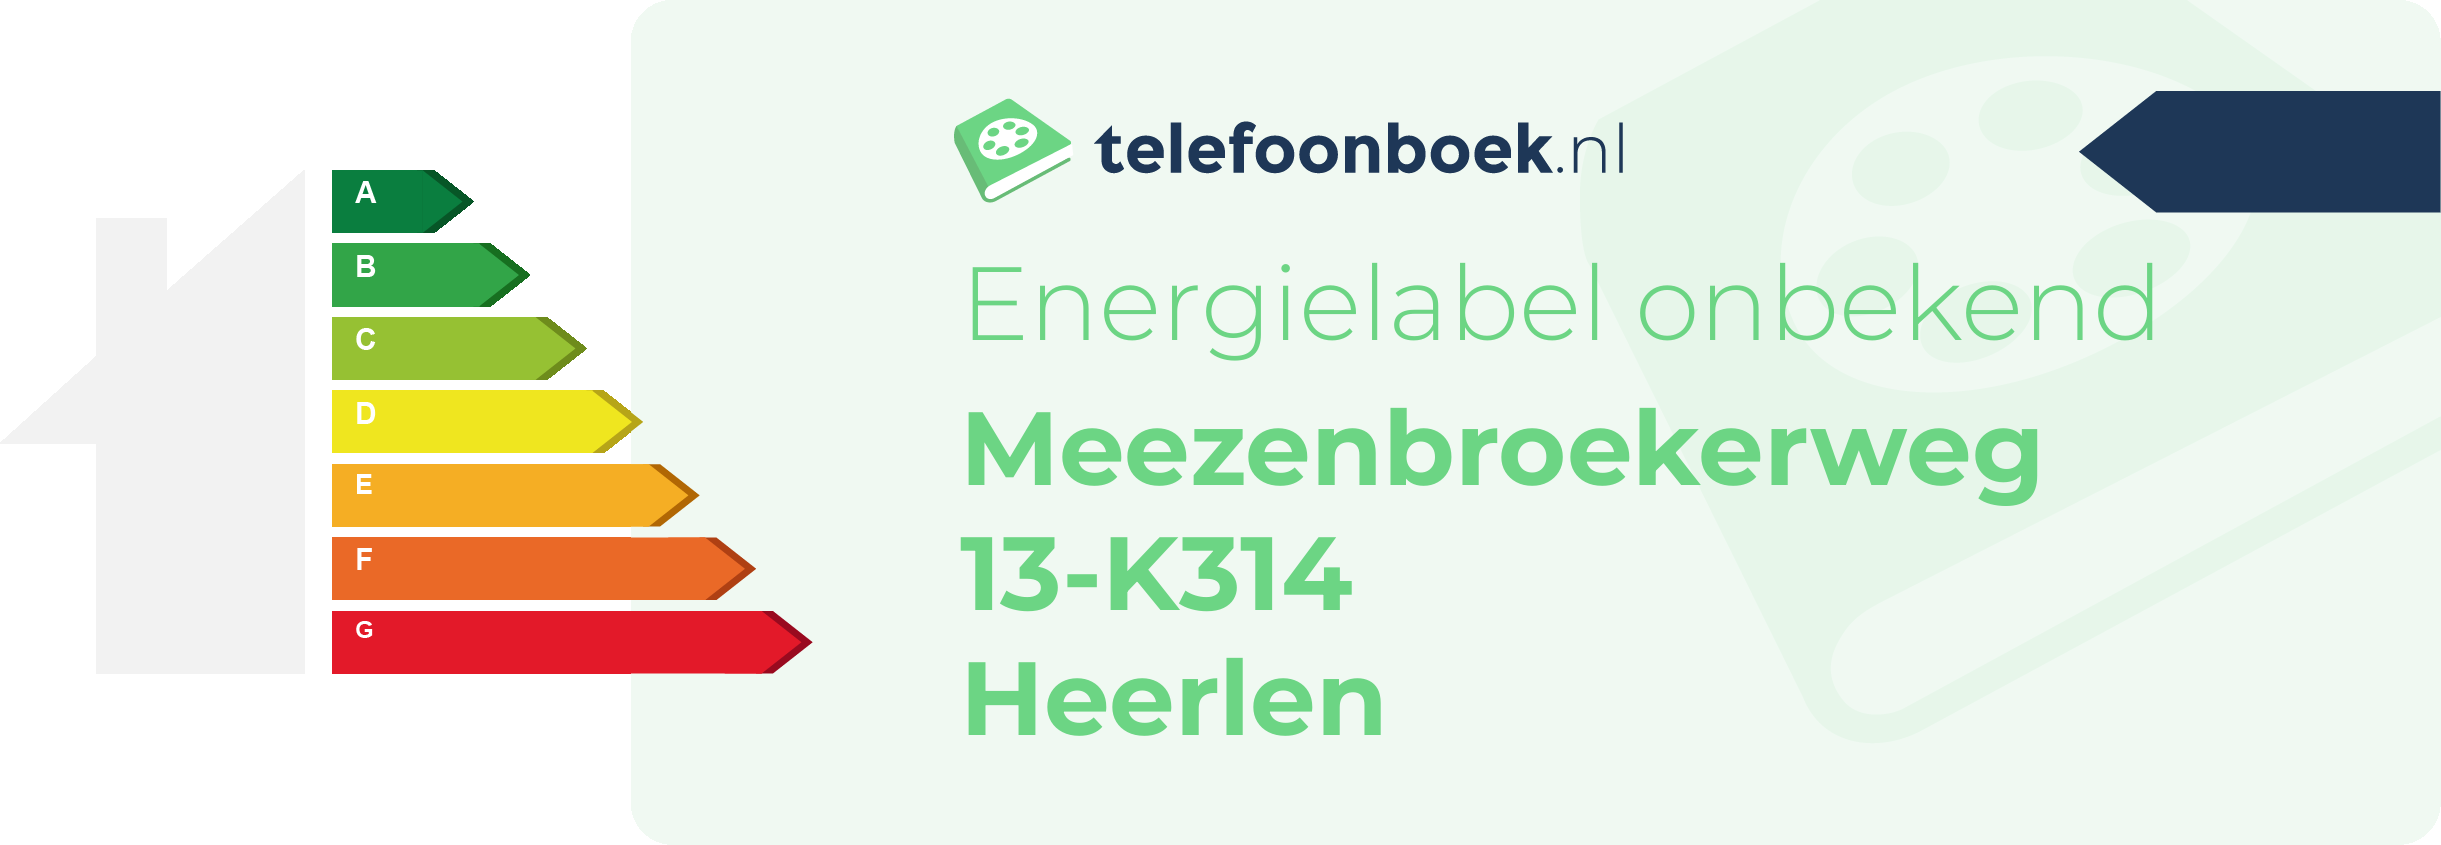 Energielabel Meezenbroekerweg 13-K314 Heerlen